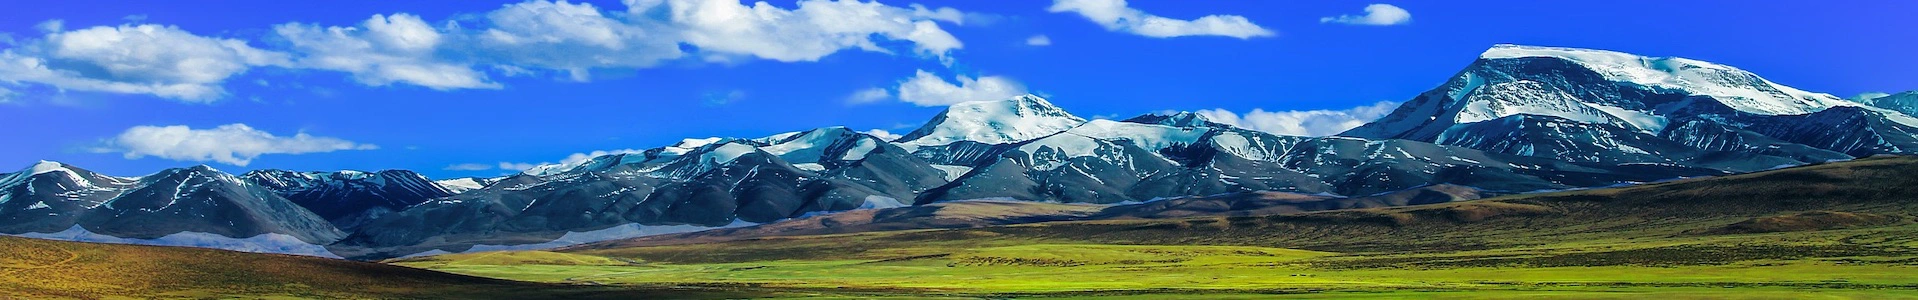 Tibet_mountain_1920x300